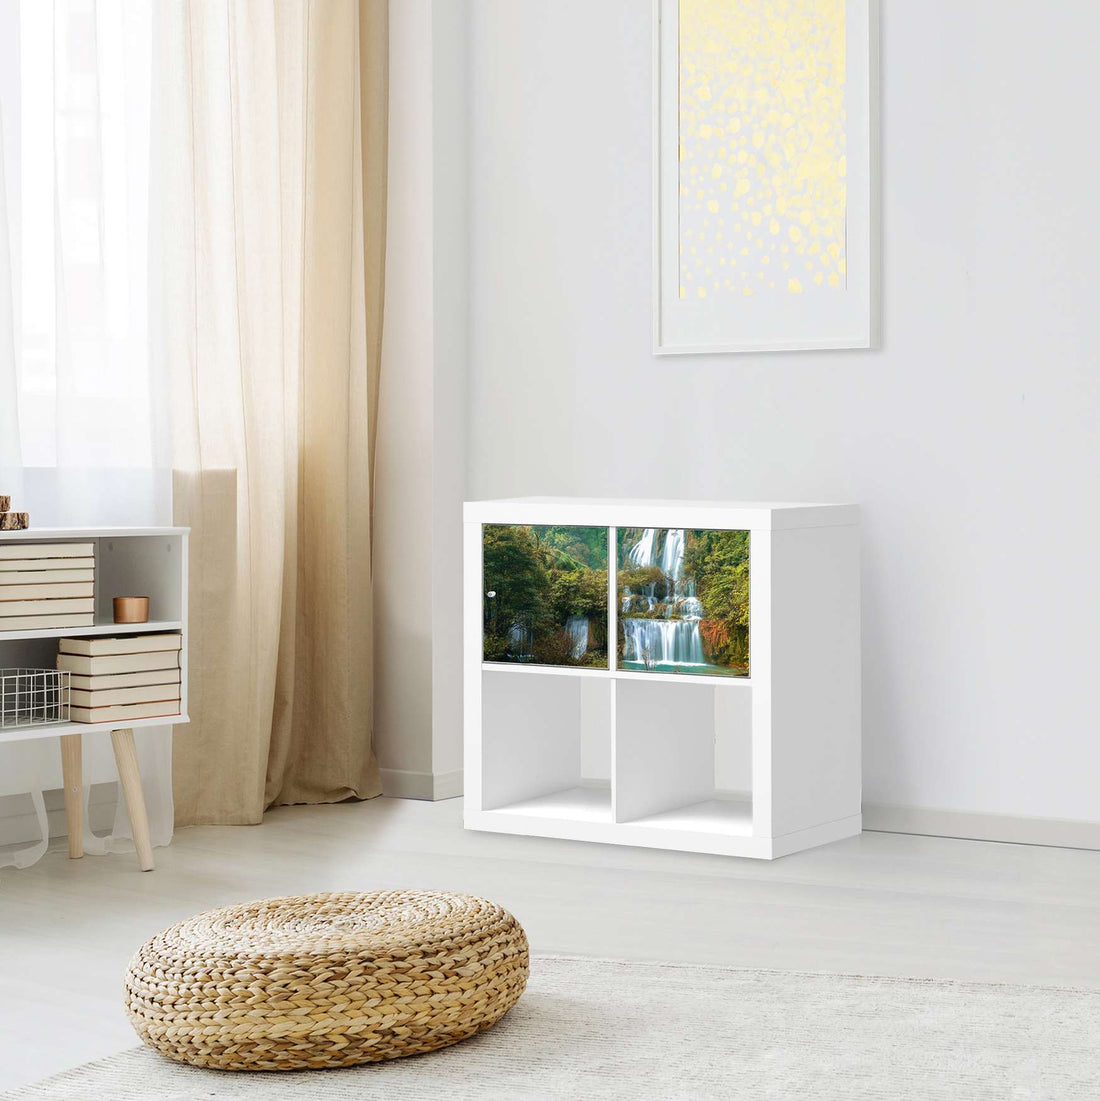 Möbel Klebefolie Rainforest - IKEA Expedit Regal 2 Türen Quer - Wohnzimmer